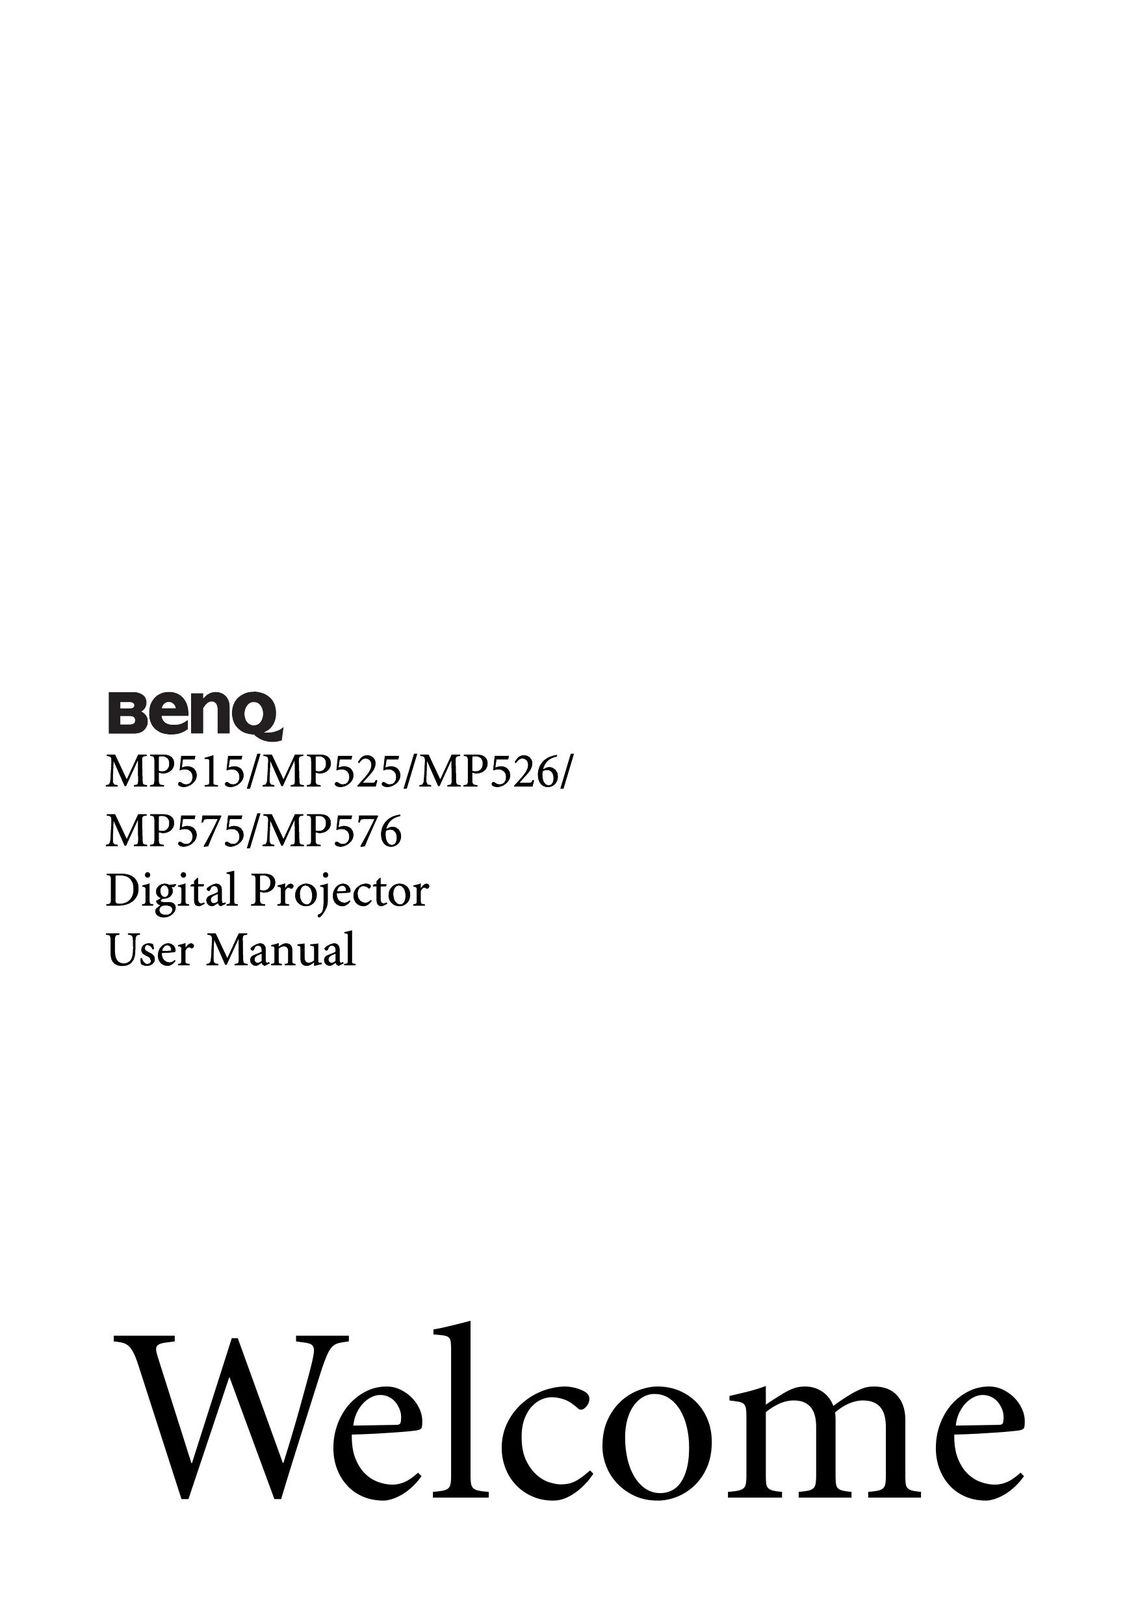 BenQ MP576 Projector User Manual